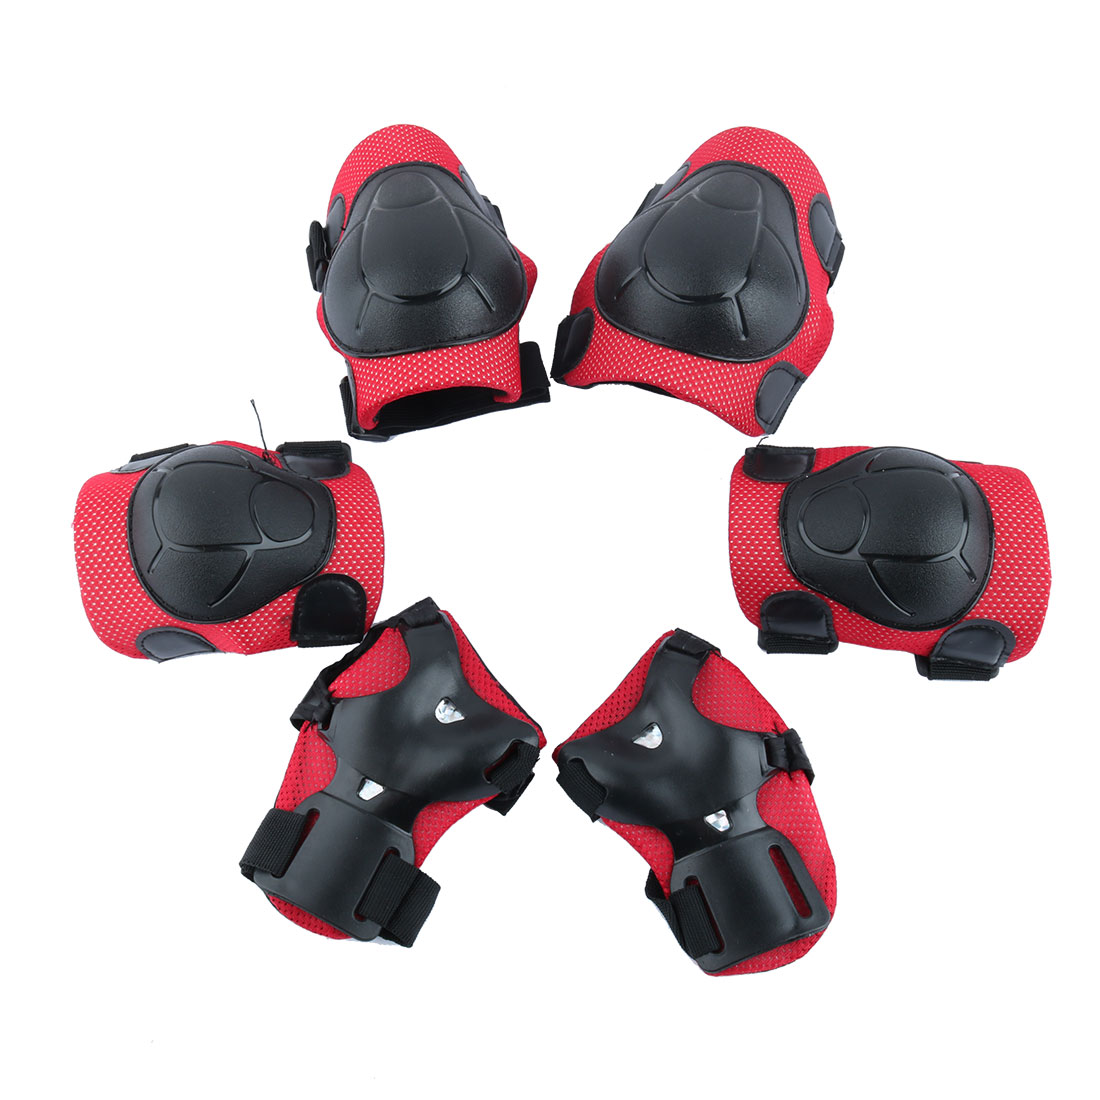 Unique Bargains 6Pcs Multi-sports Protective Gear Set Elbow Pads Wrist Guard Knee Pads For Children